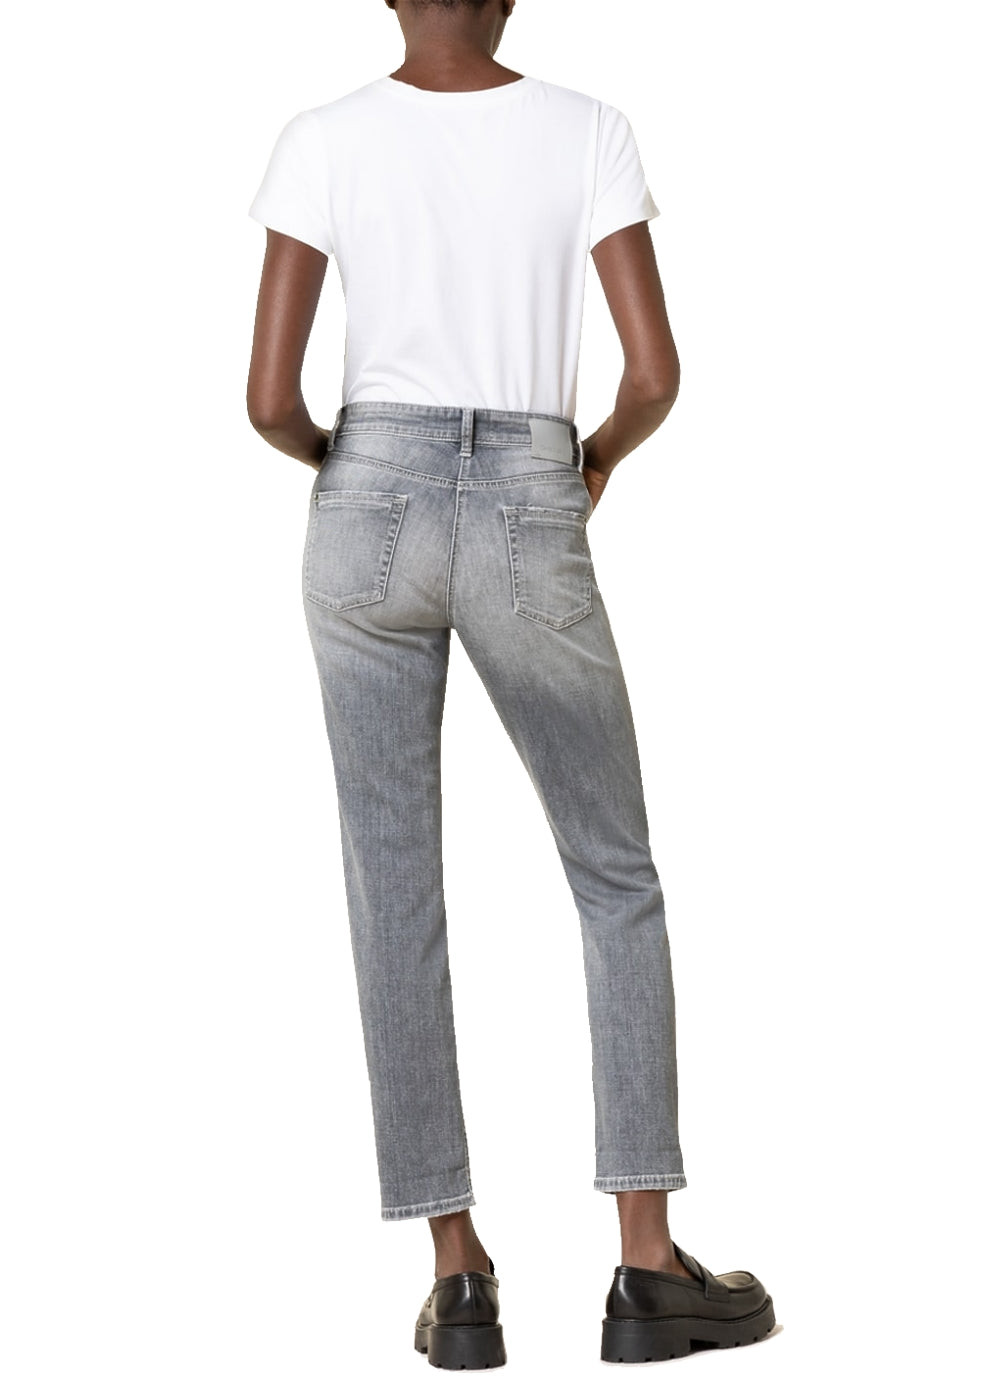 Cambio Jeans Pina short in hellgrau. Schmal geschnittene 5-Pocket Hose mit normaler Taille von Cambio online kaufen. Slim fit Jeans mit modischer 7/8 Länge und moderaten destroyed Elementen aus der neuen Cambio Kollektion.